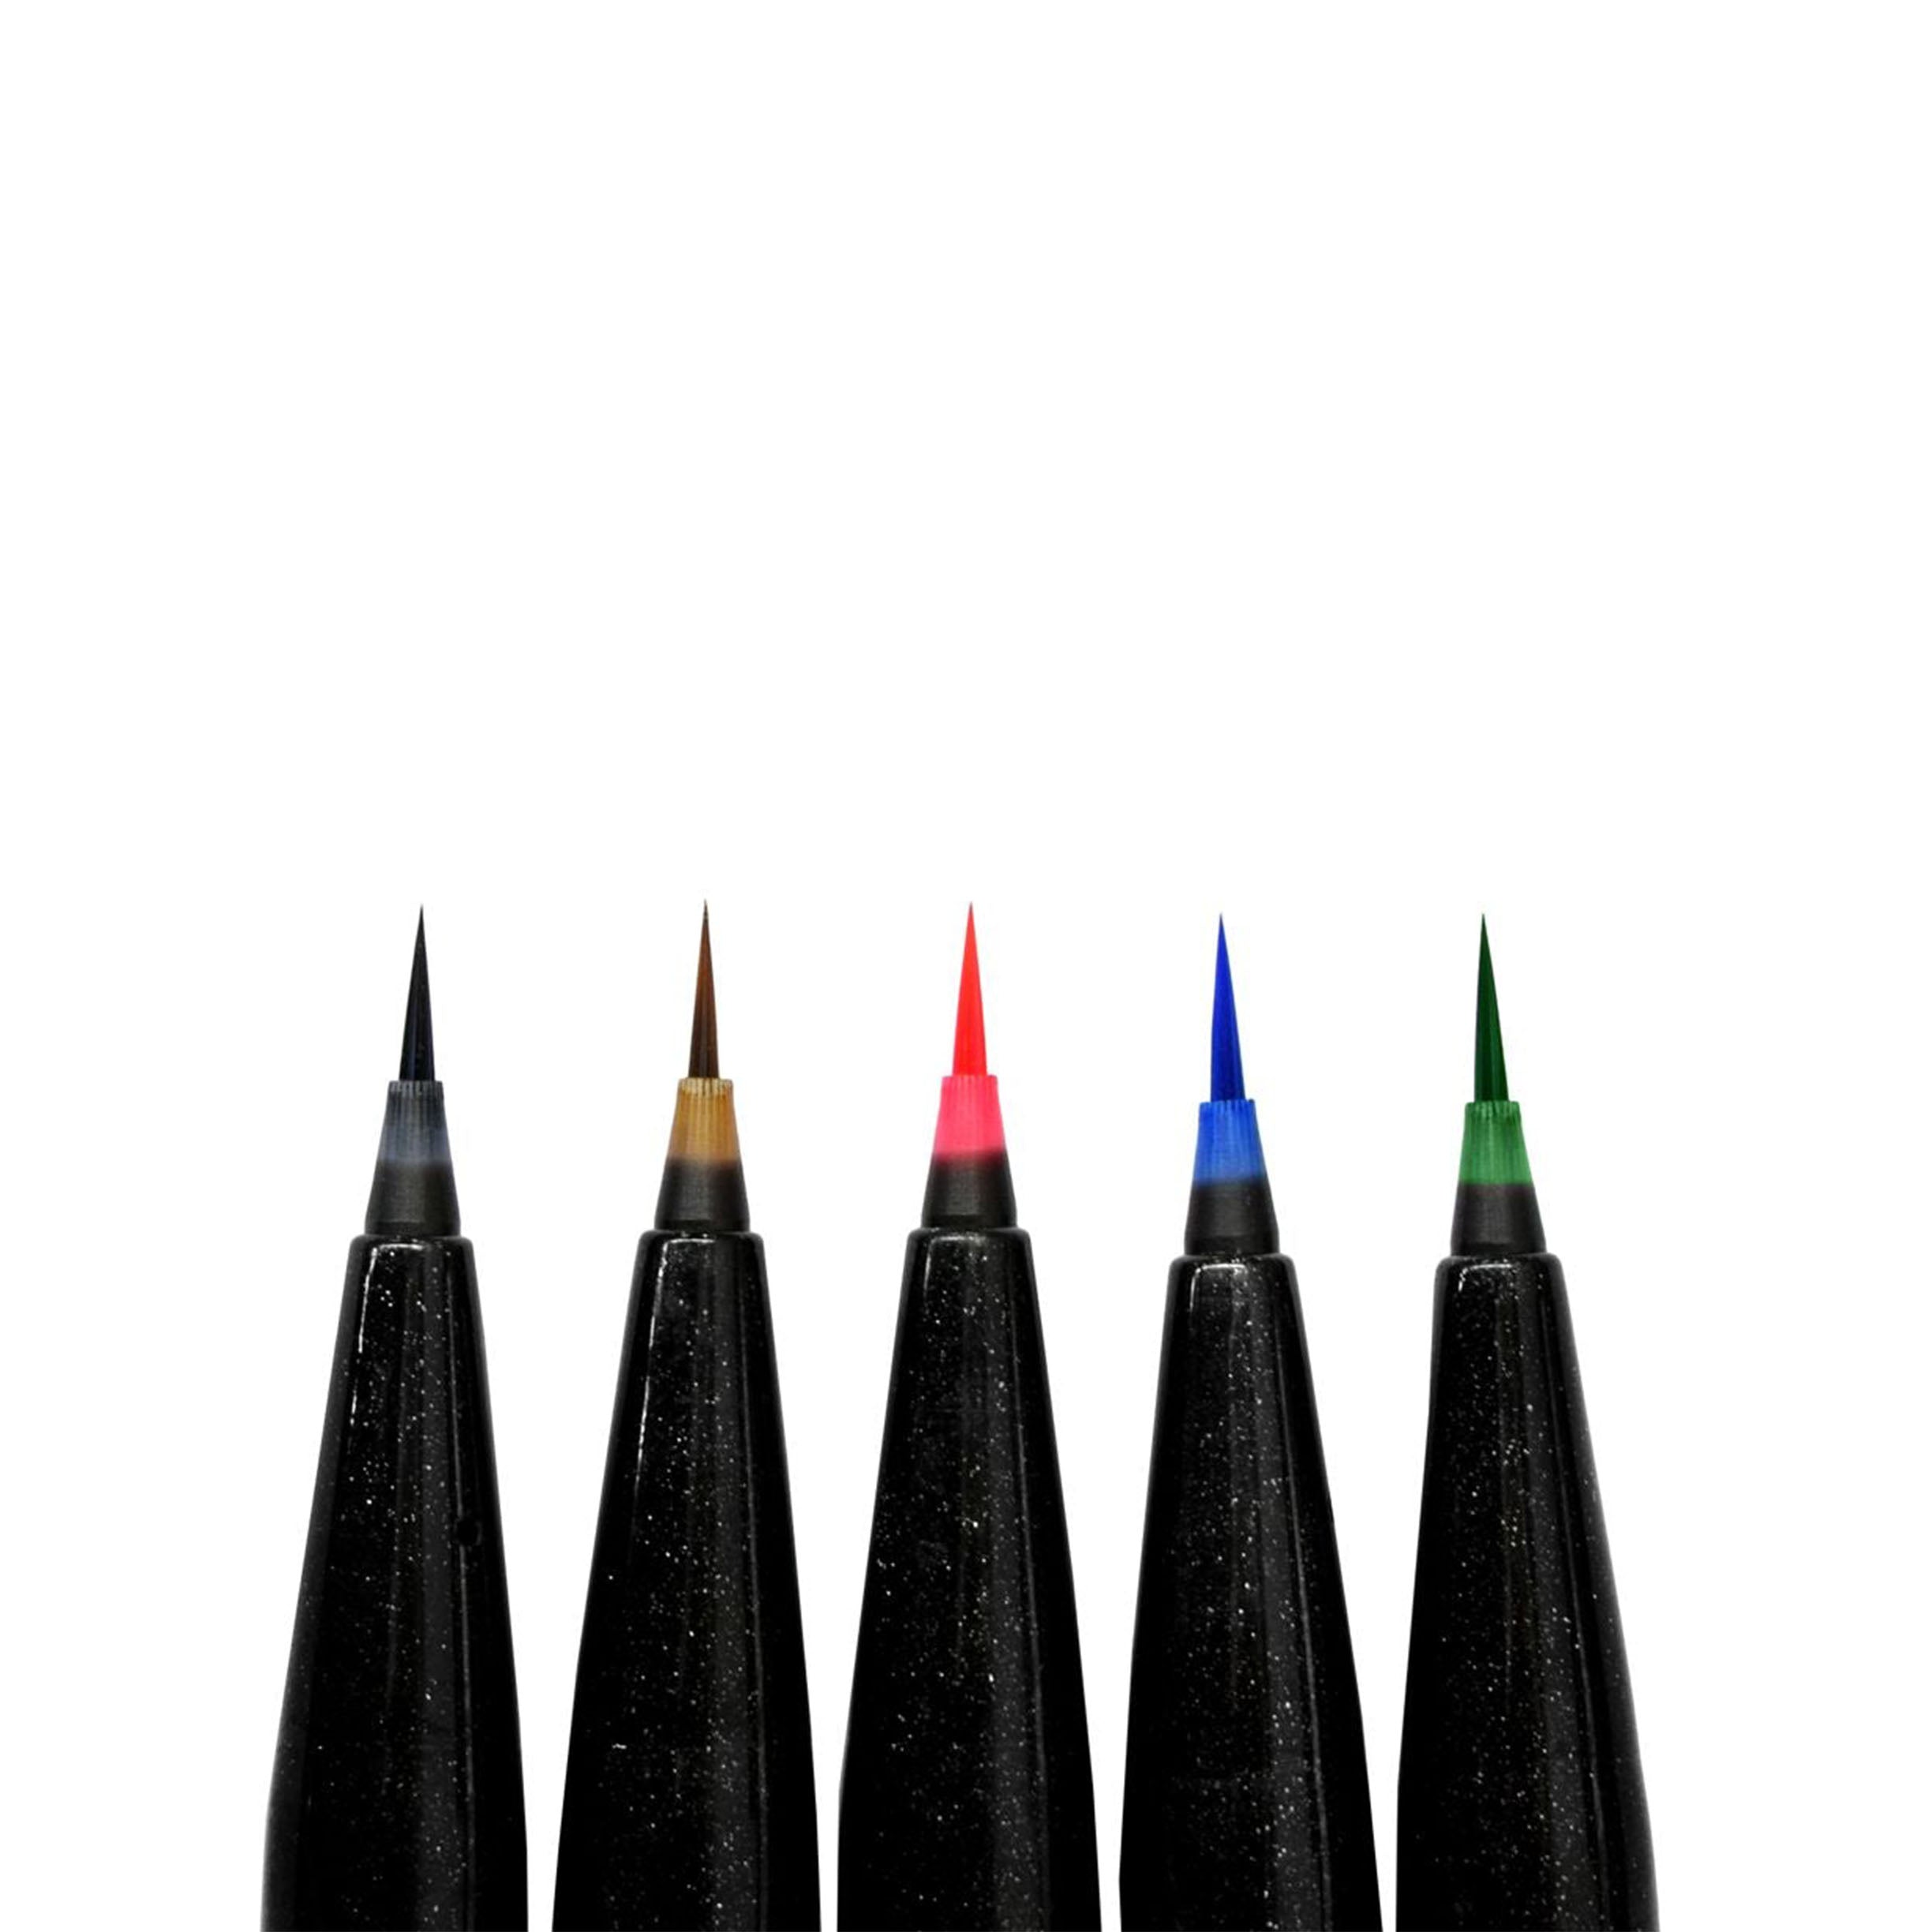 Brush Pen Review: Pentel Ultra Fine Artist Brush Sign Pen - The